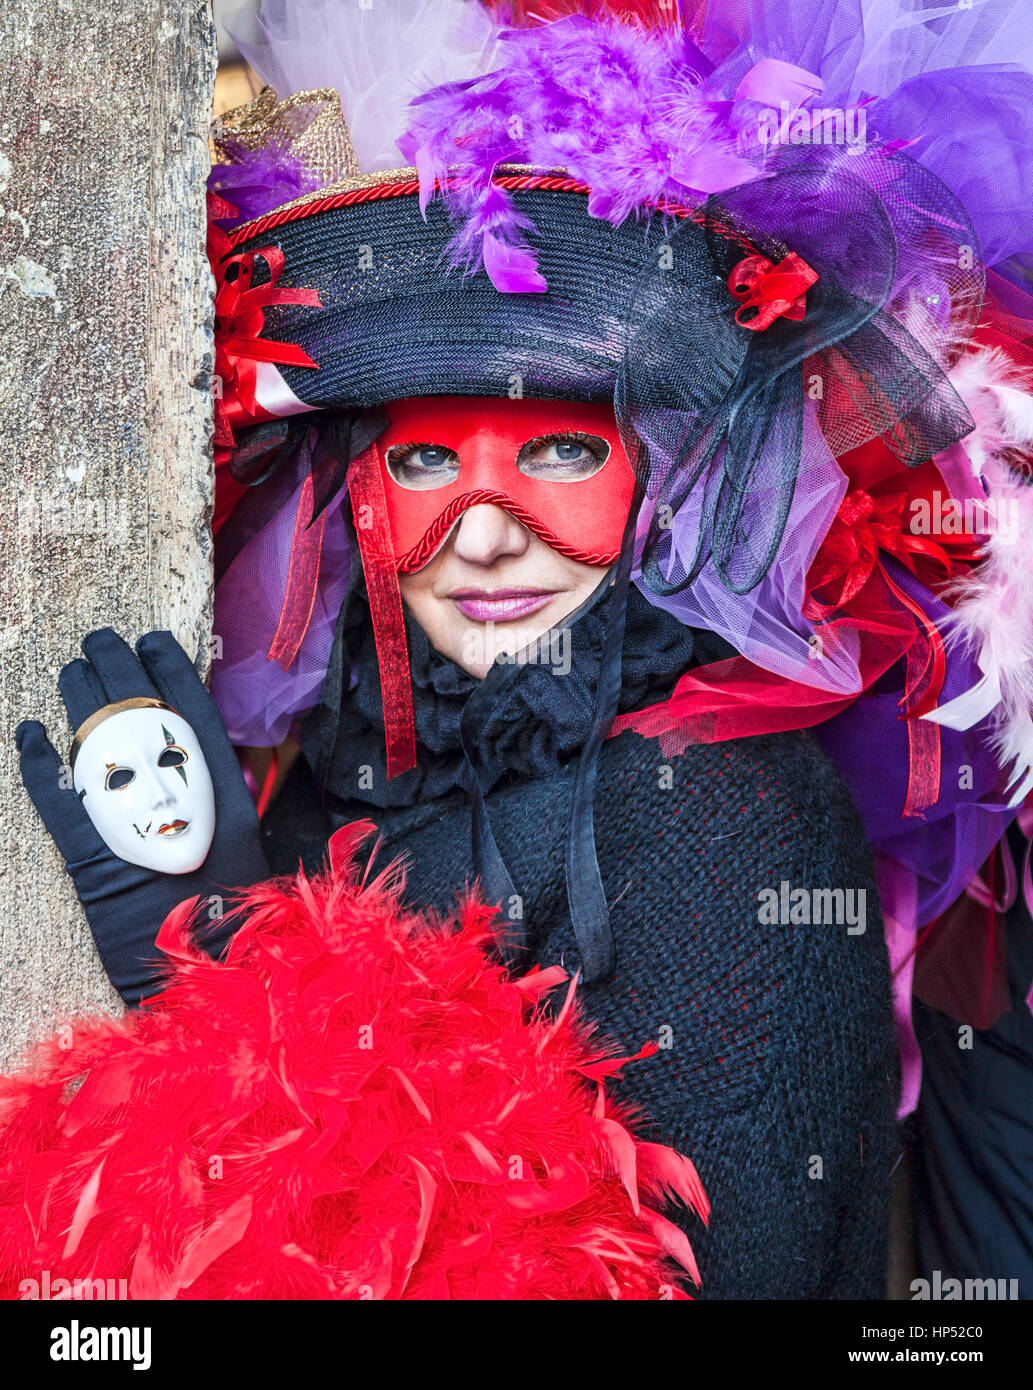 Venedig, Italien - 18. Februar 2012: Environmental Portrait einer Frau in einem schönen venezianischen Verkleidung und Maske während der Karneval in Venedig-Tage. Stockfoto